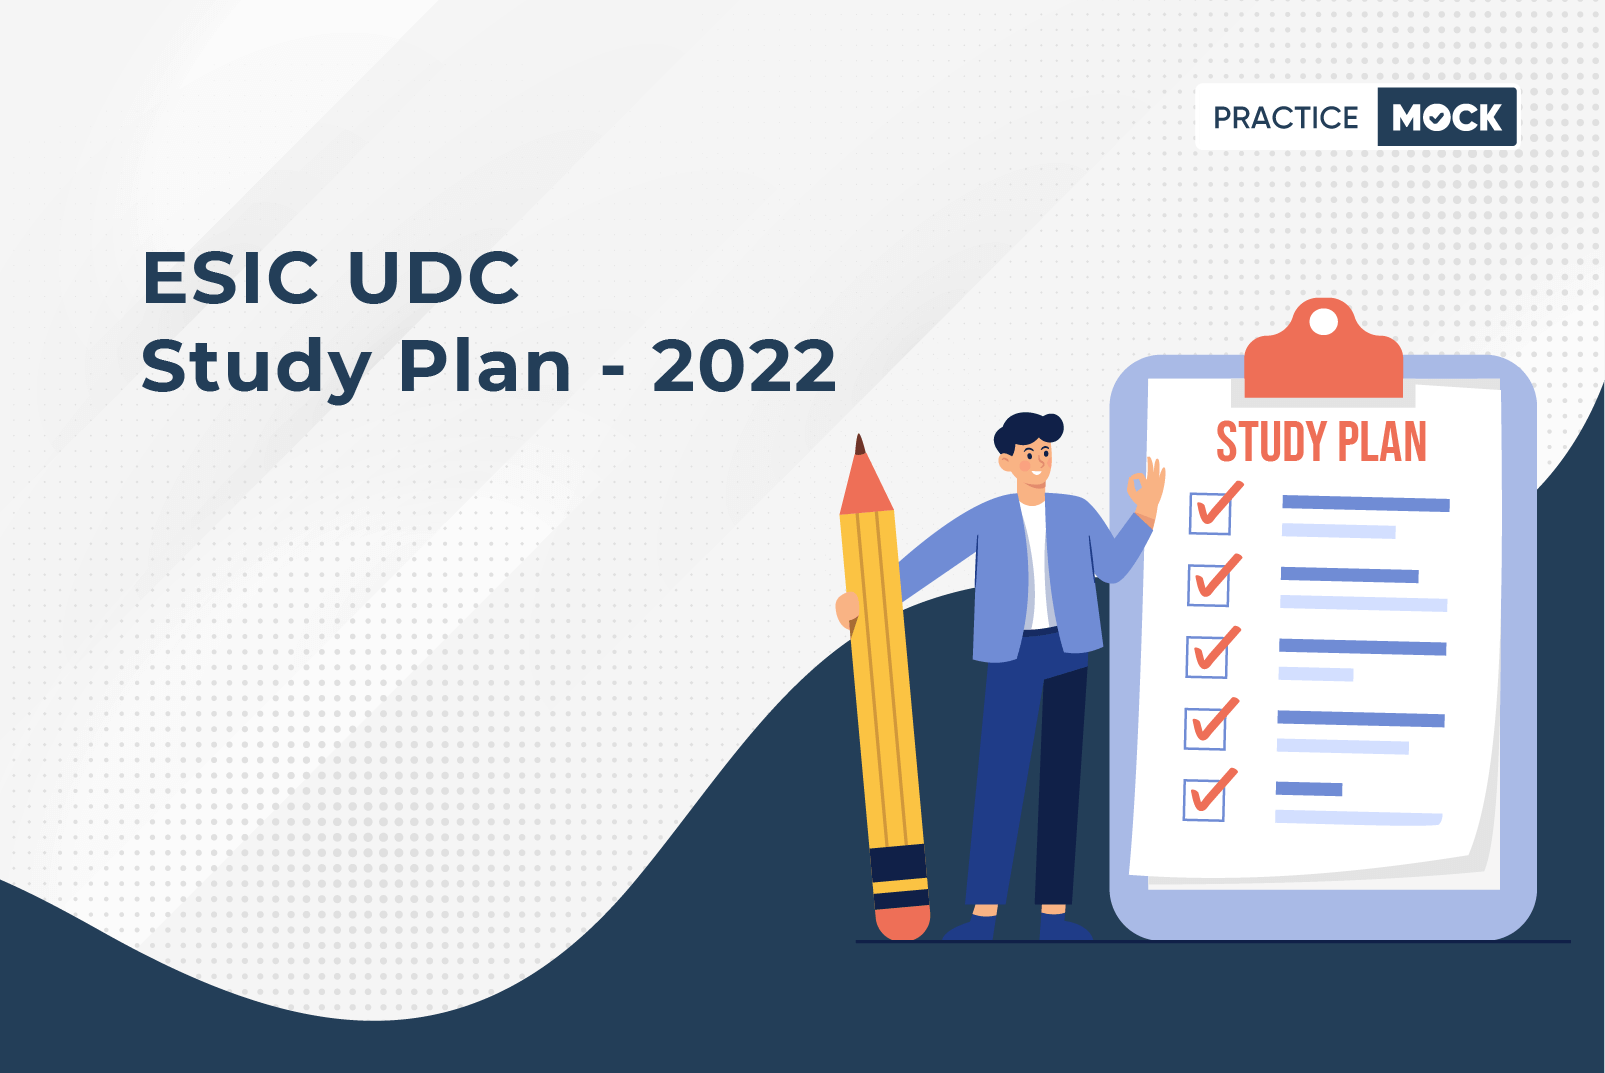 ESIC UDC Study Plan - 2022